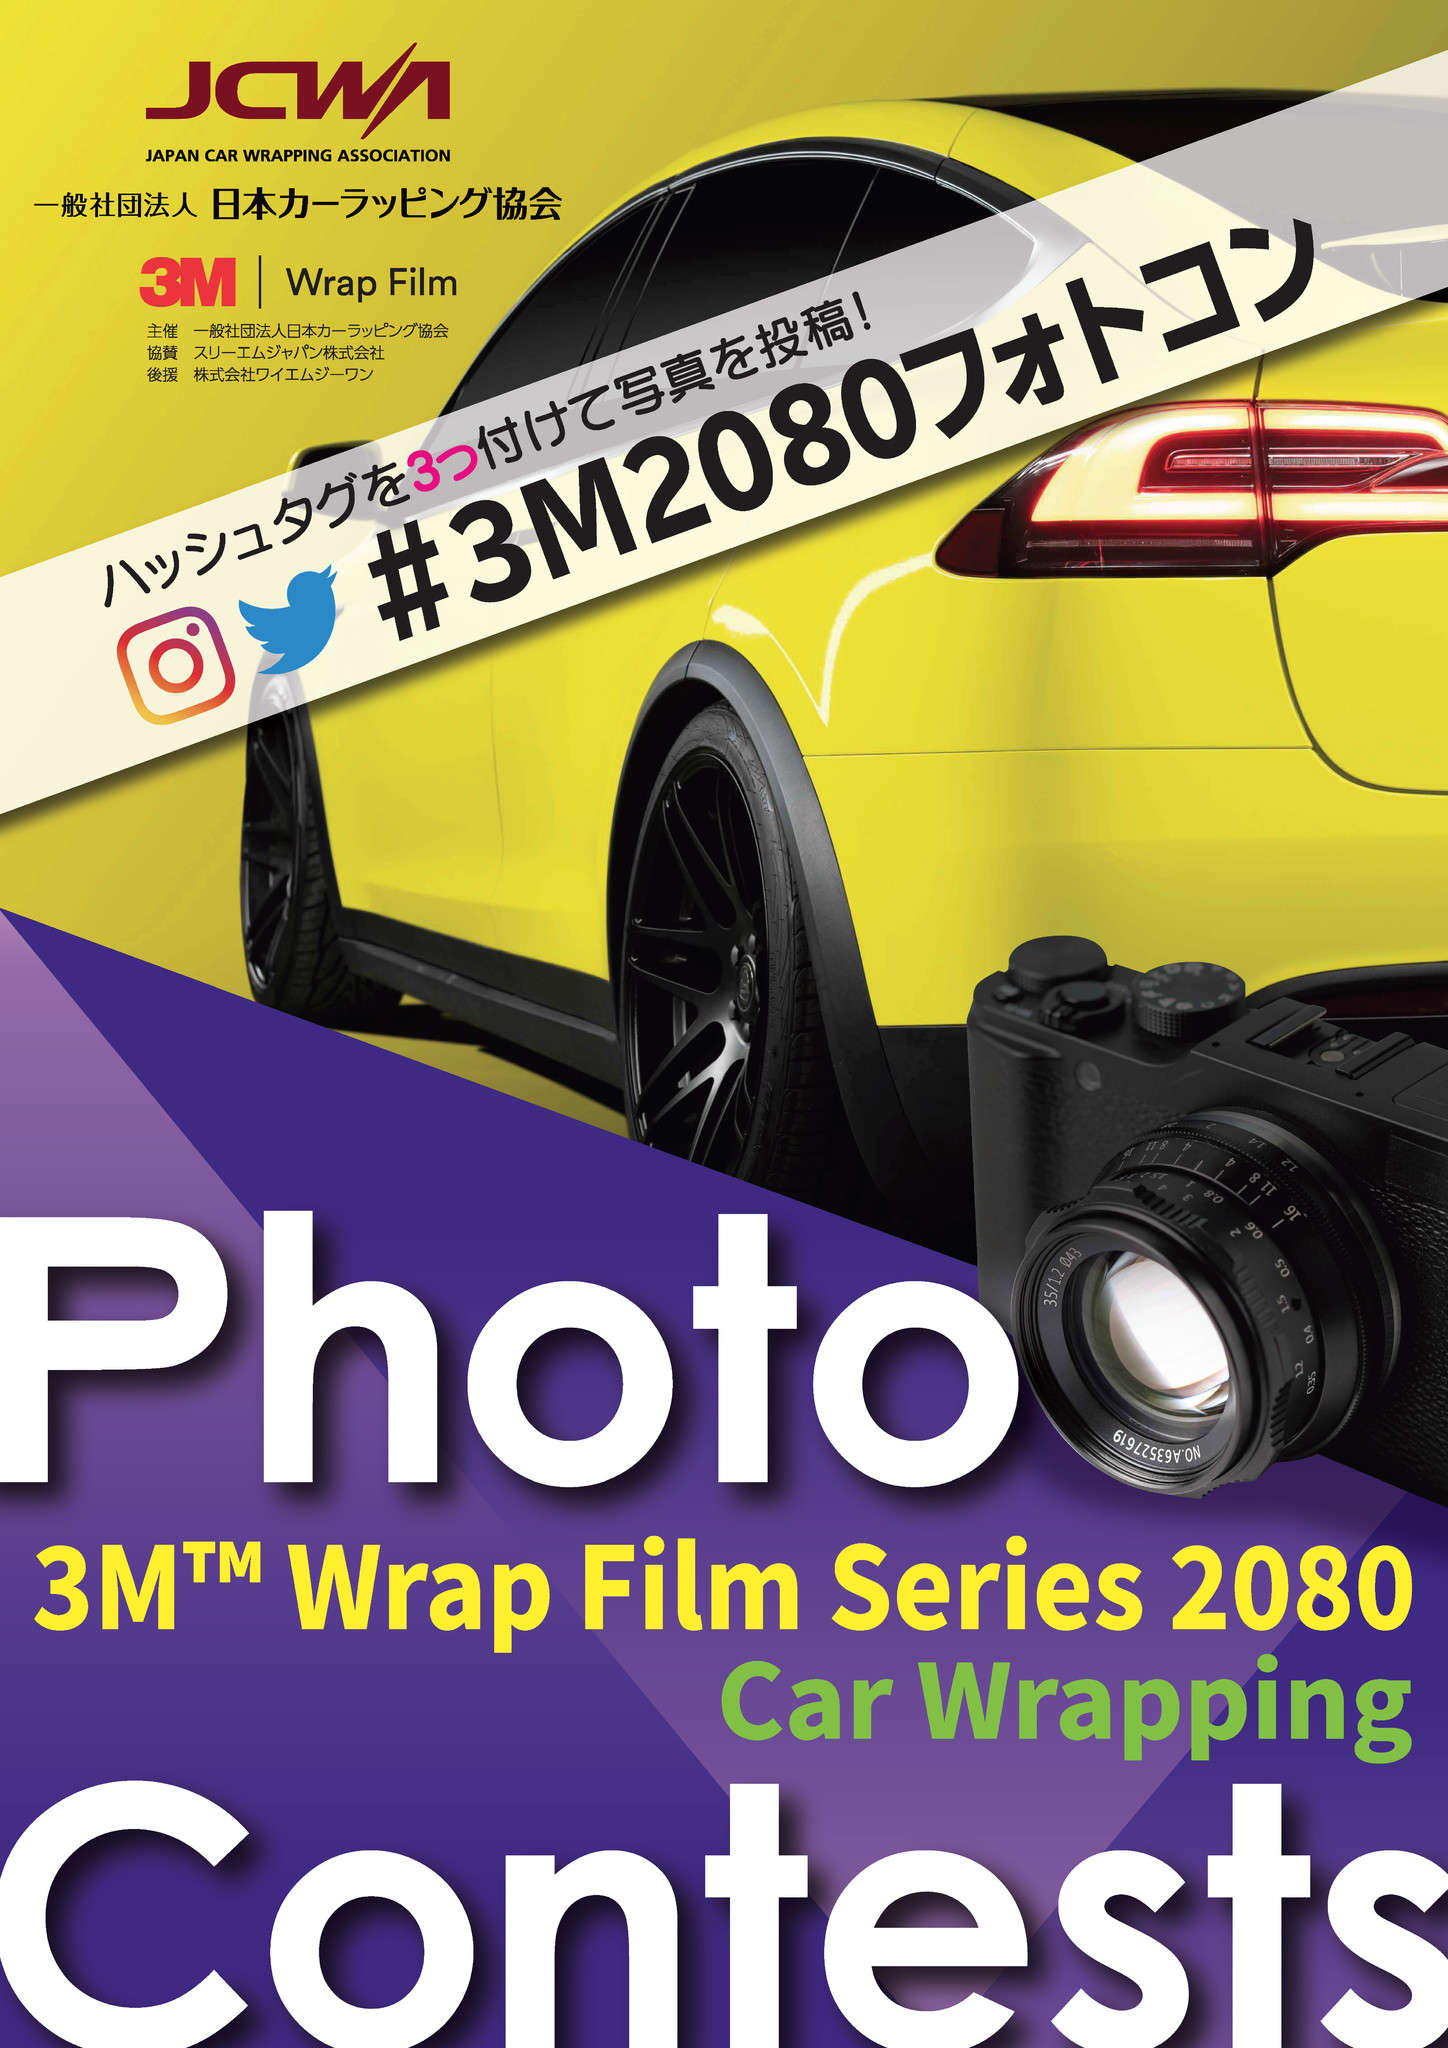 日本初のカーラッピング写真コンテスト 第1回「3M™ Wrap Film Series 2080 フォトコンテスト」を開催 ｜一般社団法人日本カー ラッピング協会のプレスリリース